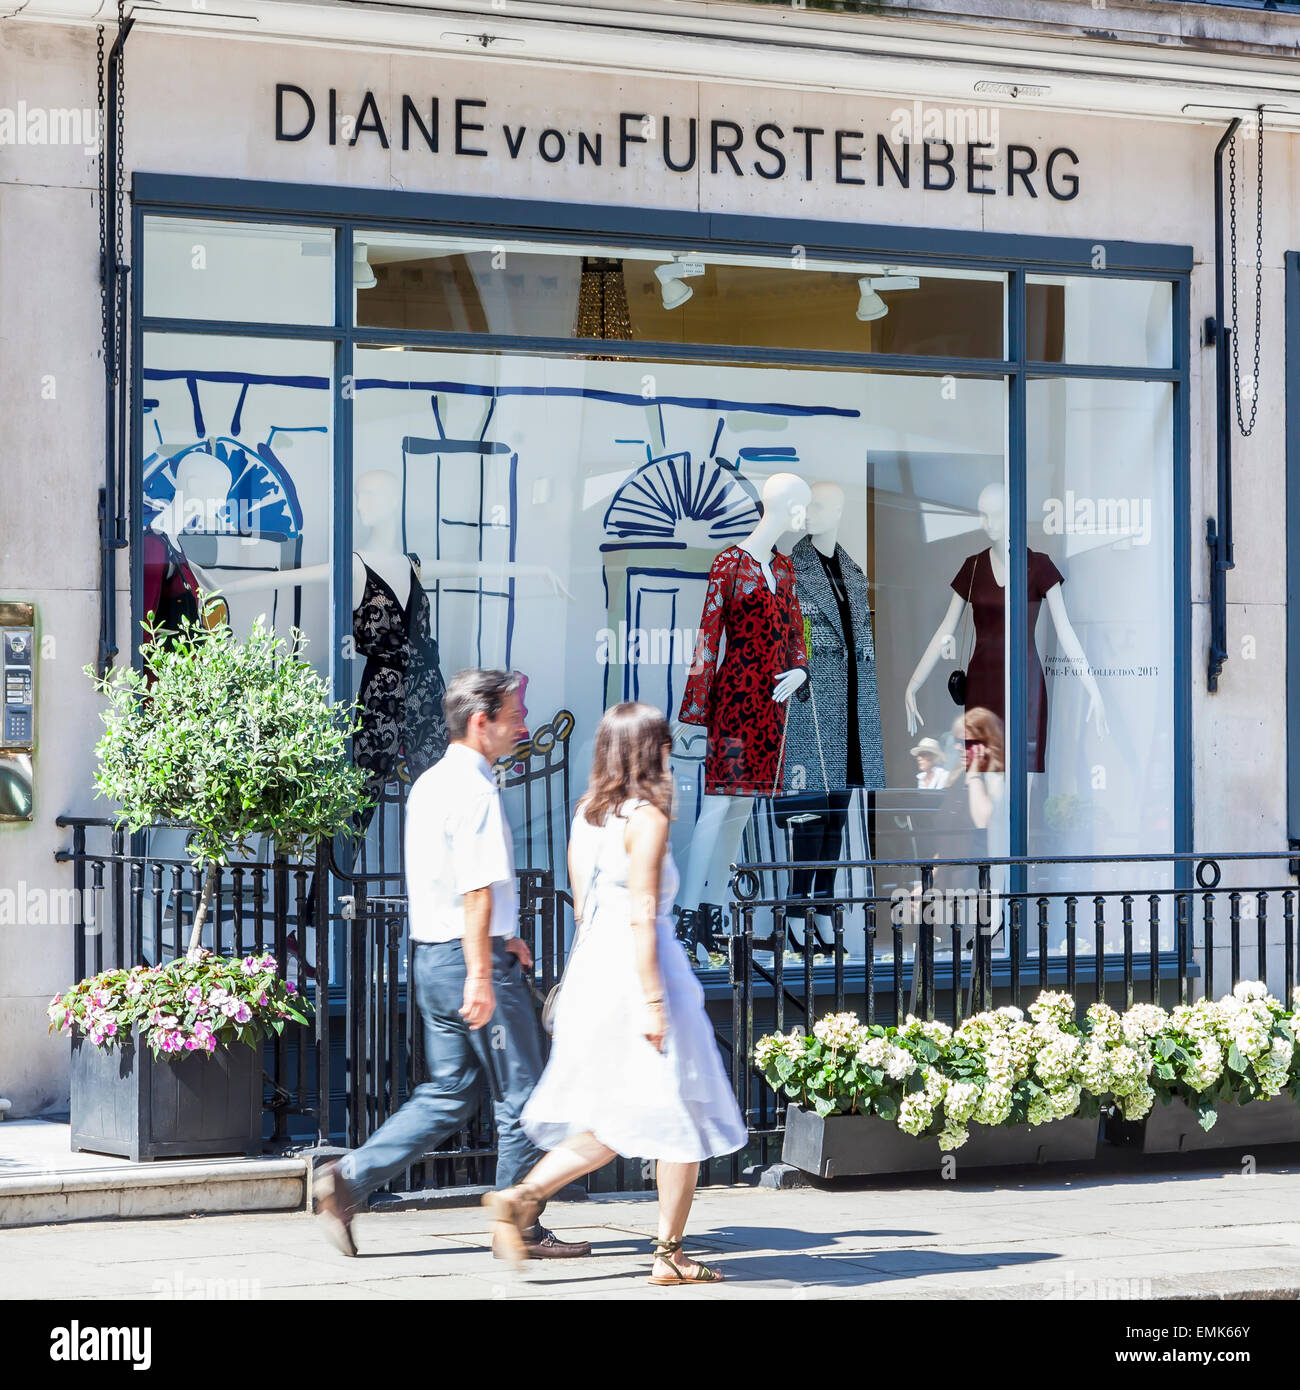 Store di designer di moda Diane von Fürstenberg o Diane von Furstenberg, London, England, Regno Unito Foto Stock